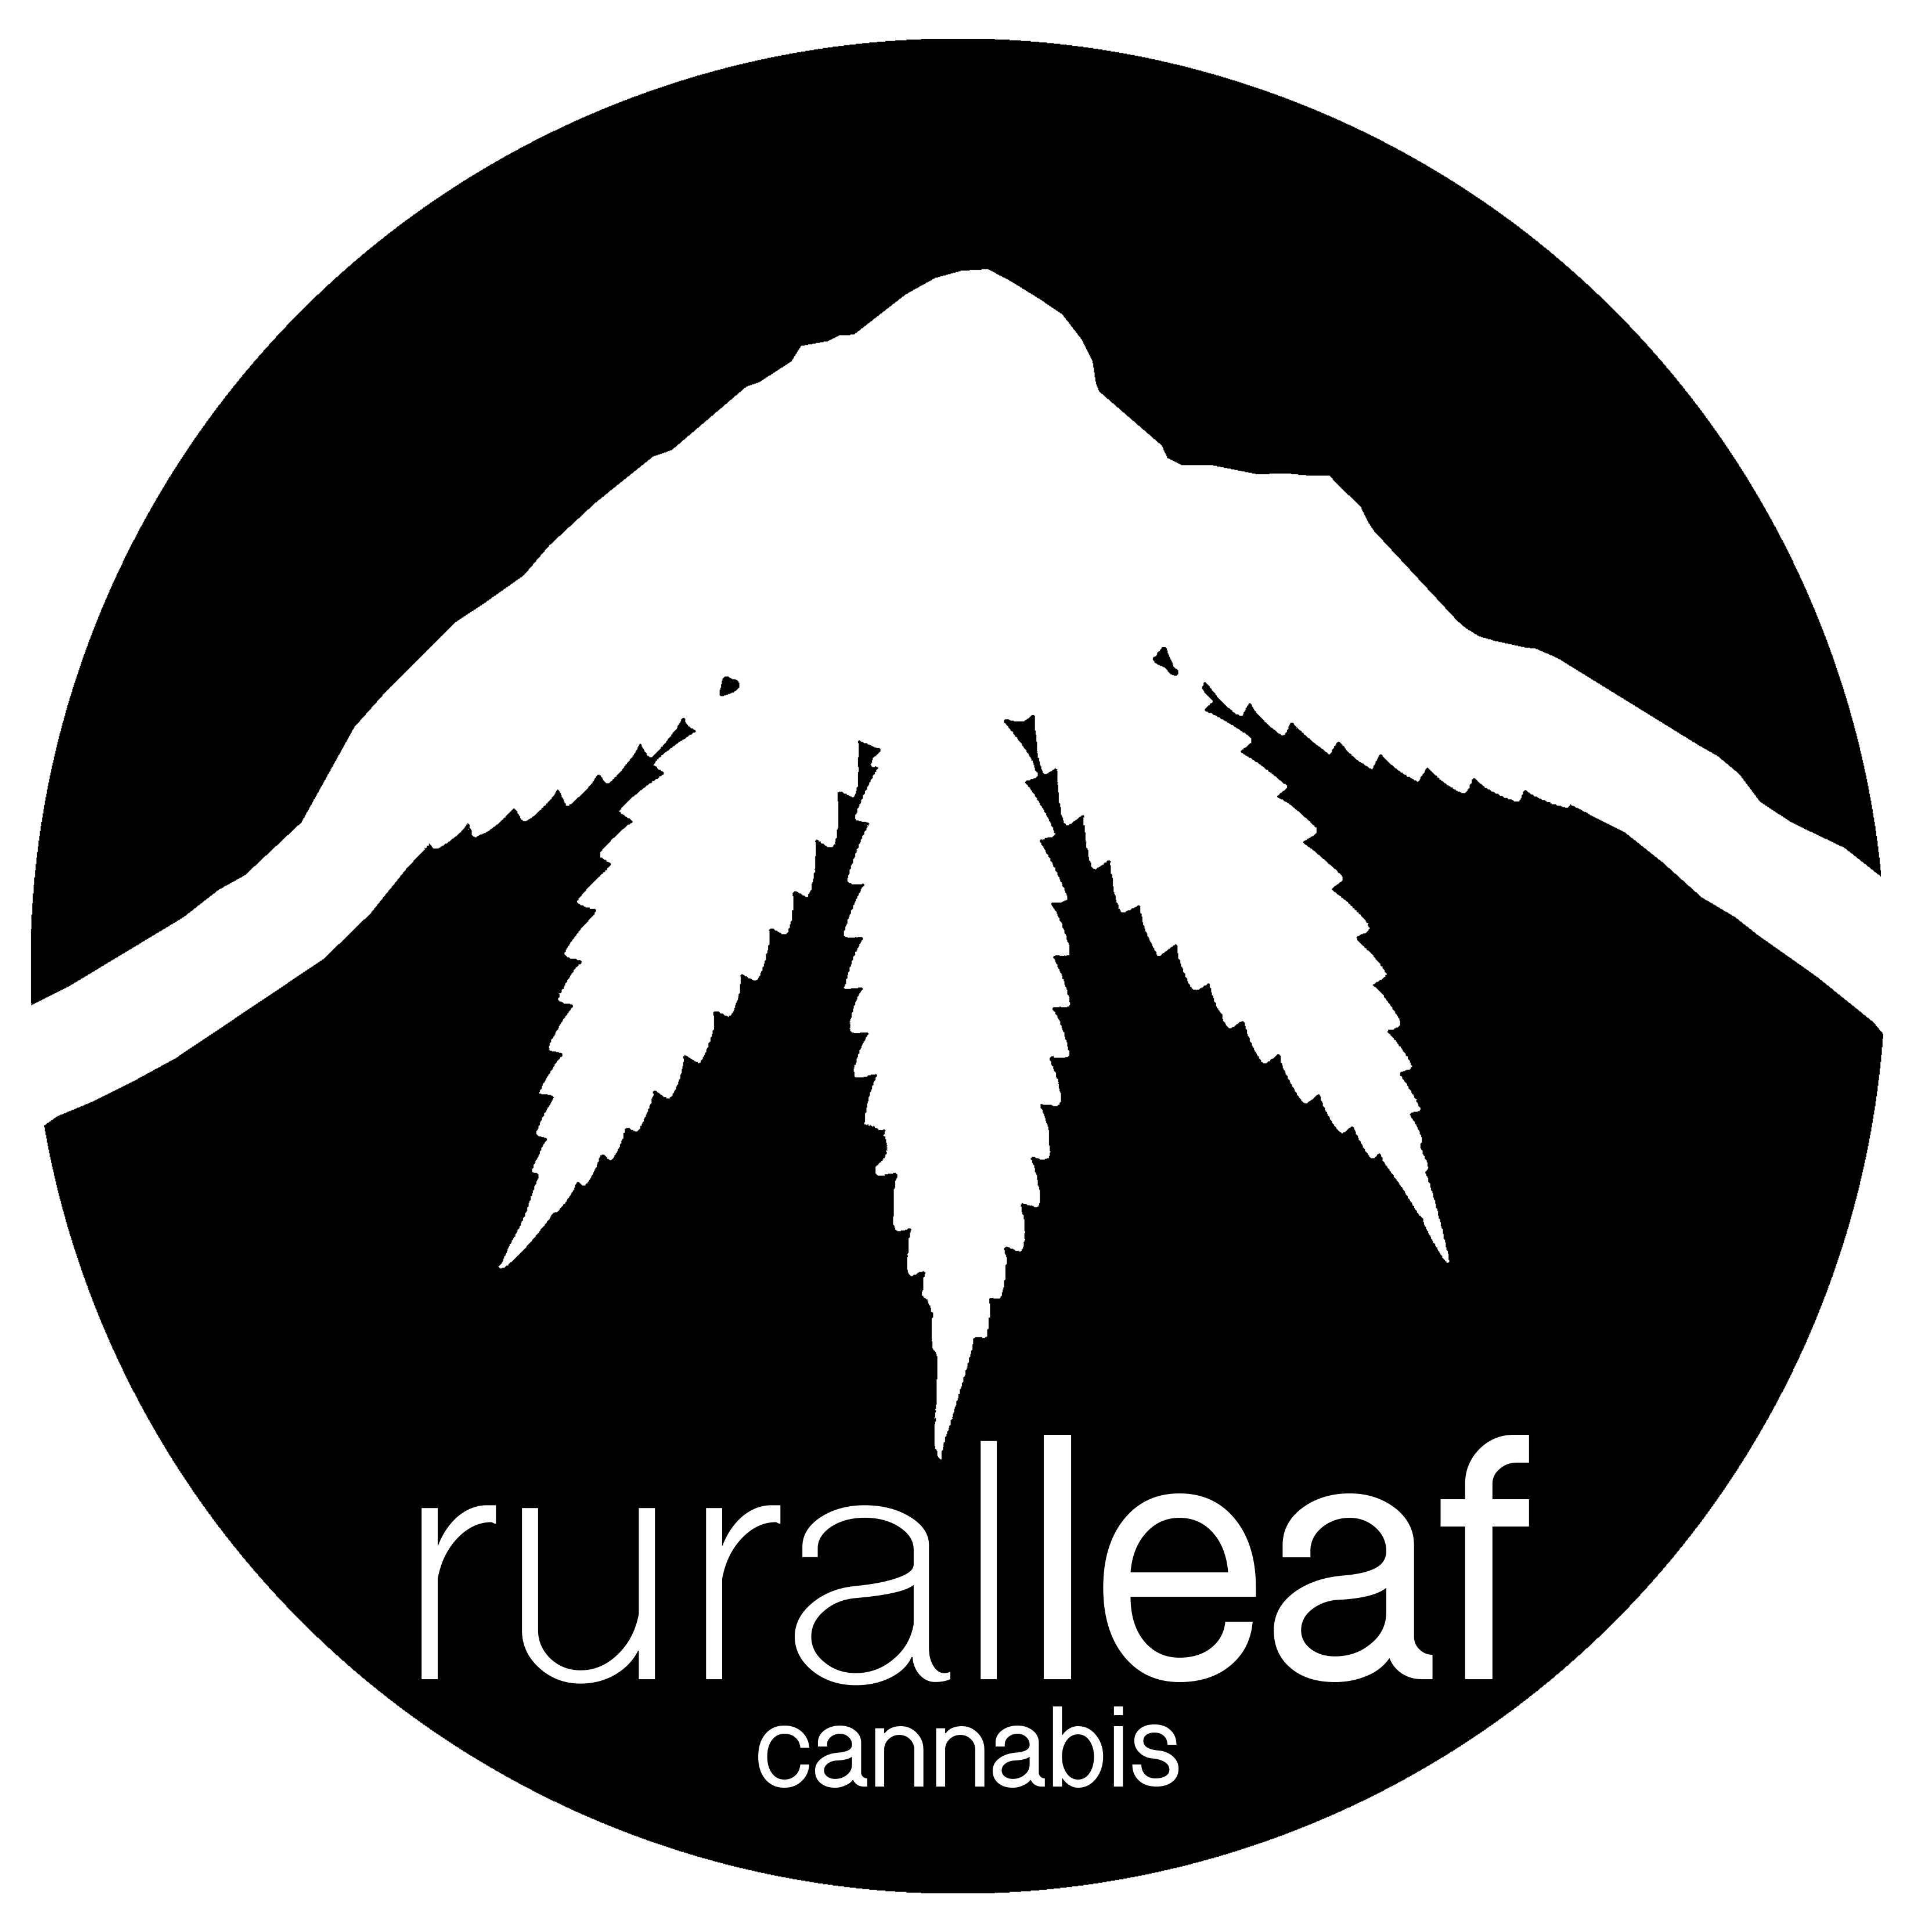 Rural Leaf Cannabis